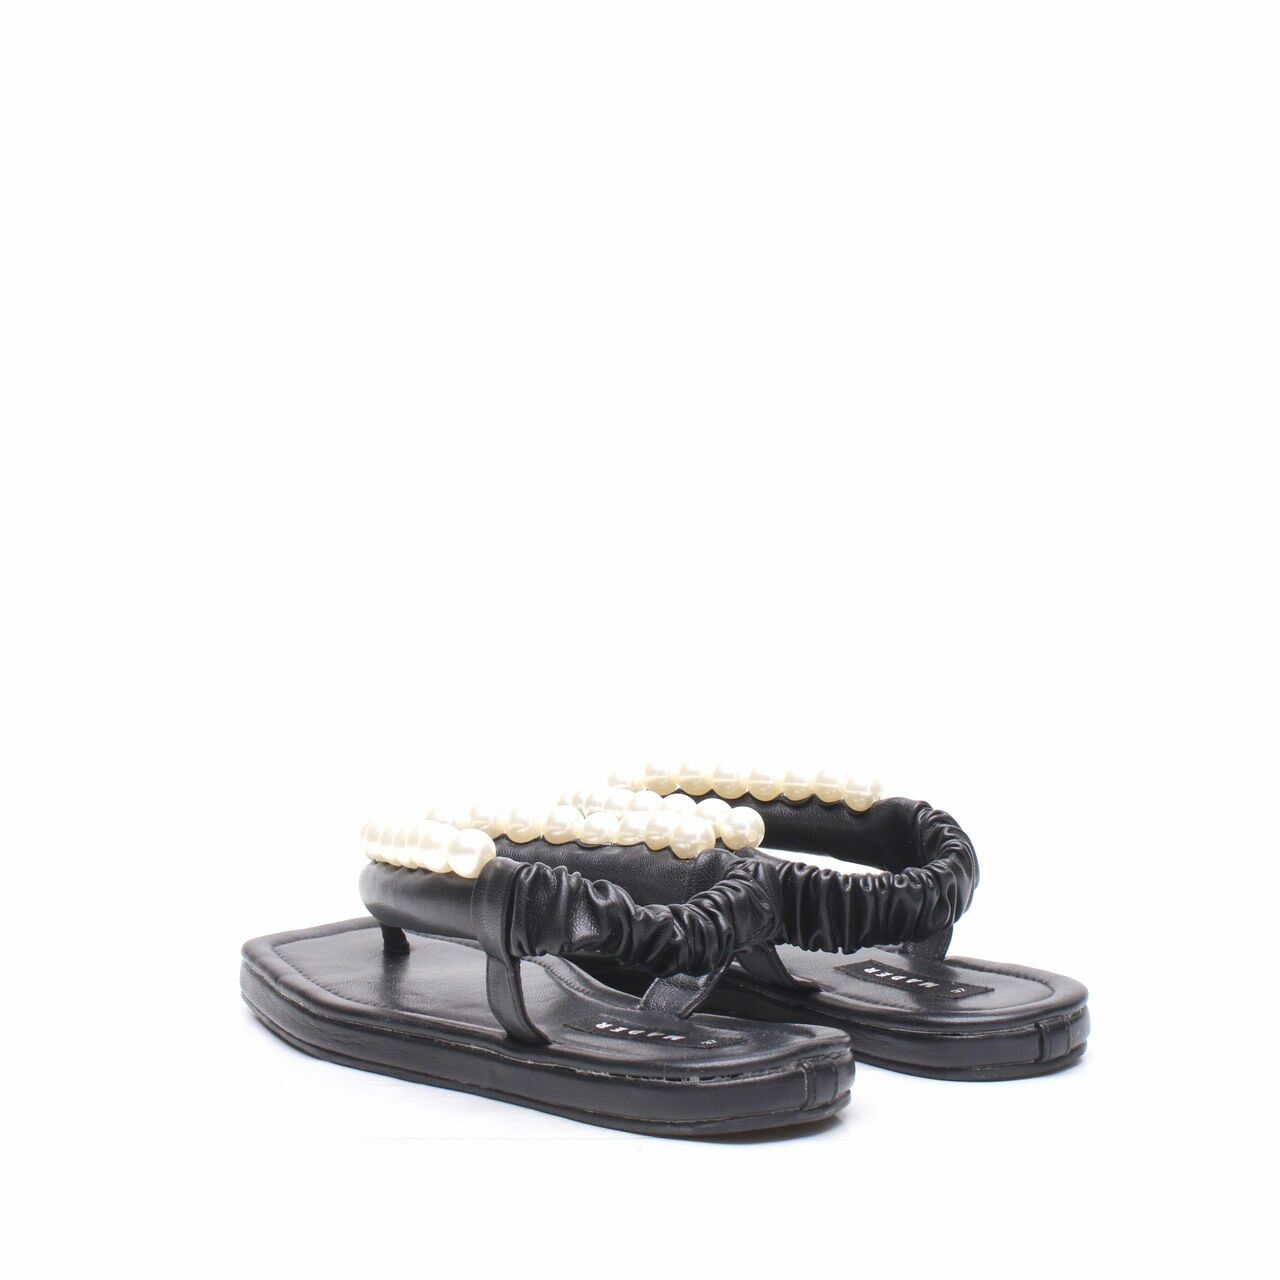 Mader Michelin Boba Black Sandals